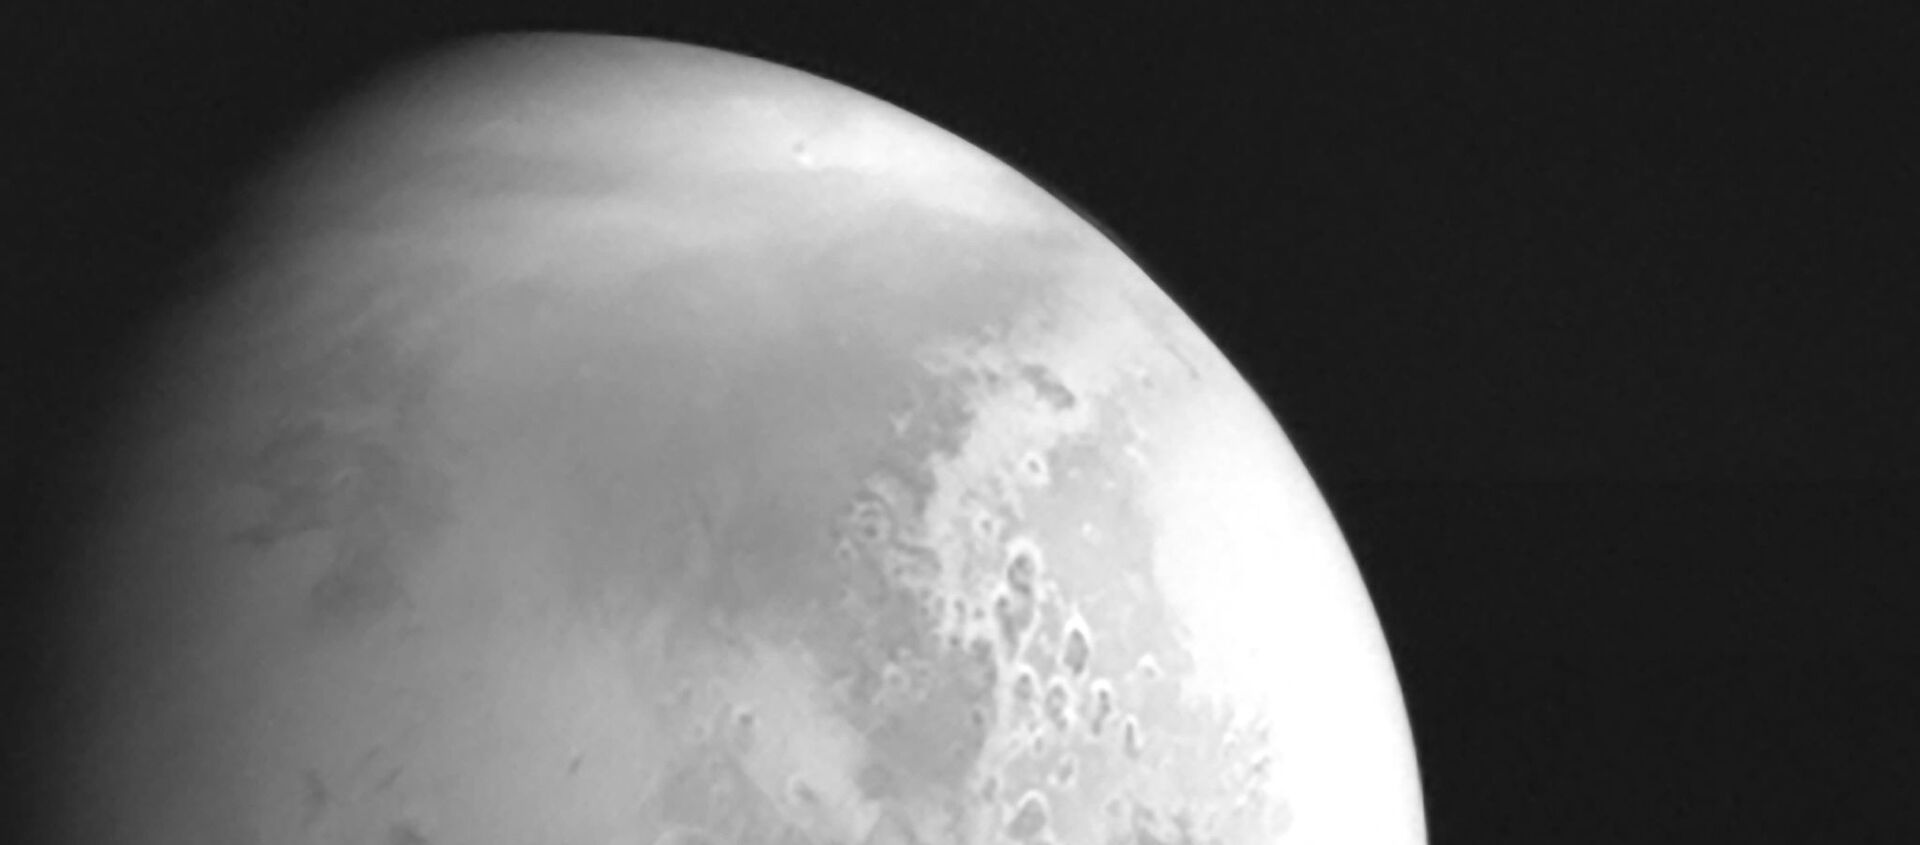 صورة نشرتها الصادرة إدارة الفضاء الوطنية الصينية لكوكب المريخ تم التقاطها بواسطة مسبار المريخ الصيني تيانوين-1 في 5 فبراير/ شباط 2021 - سبوتنيك عربي, 1920, 26.03.2021